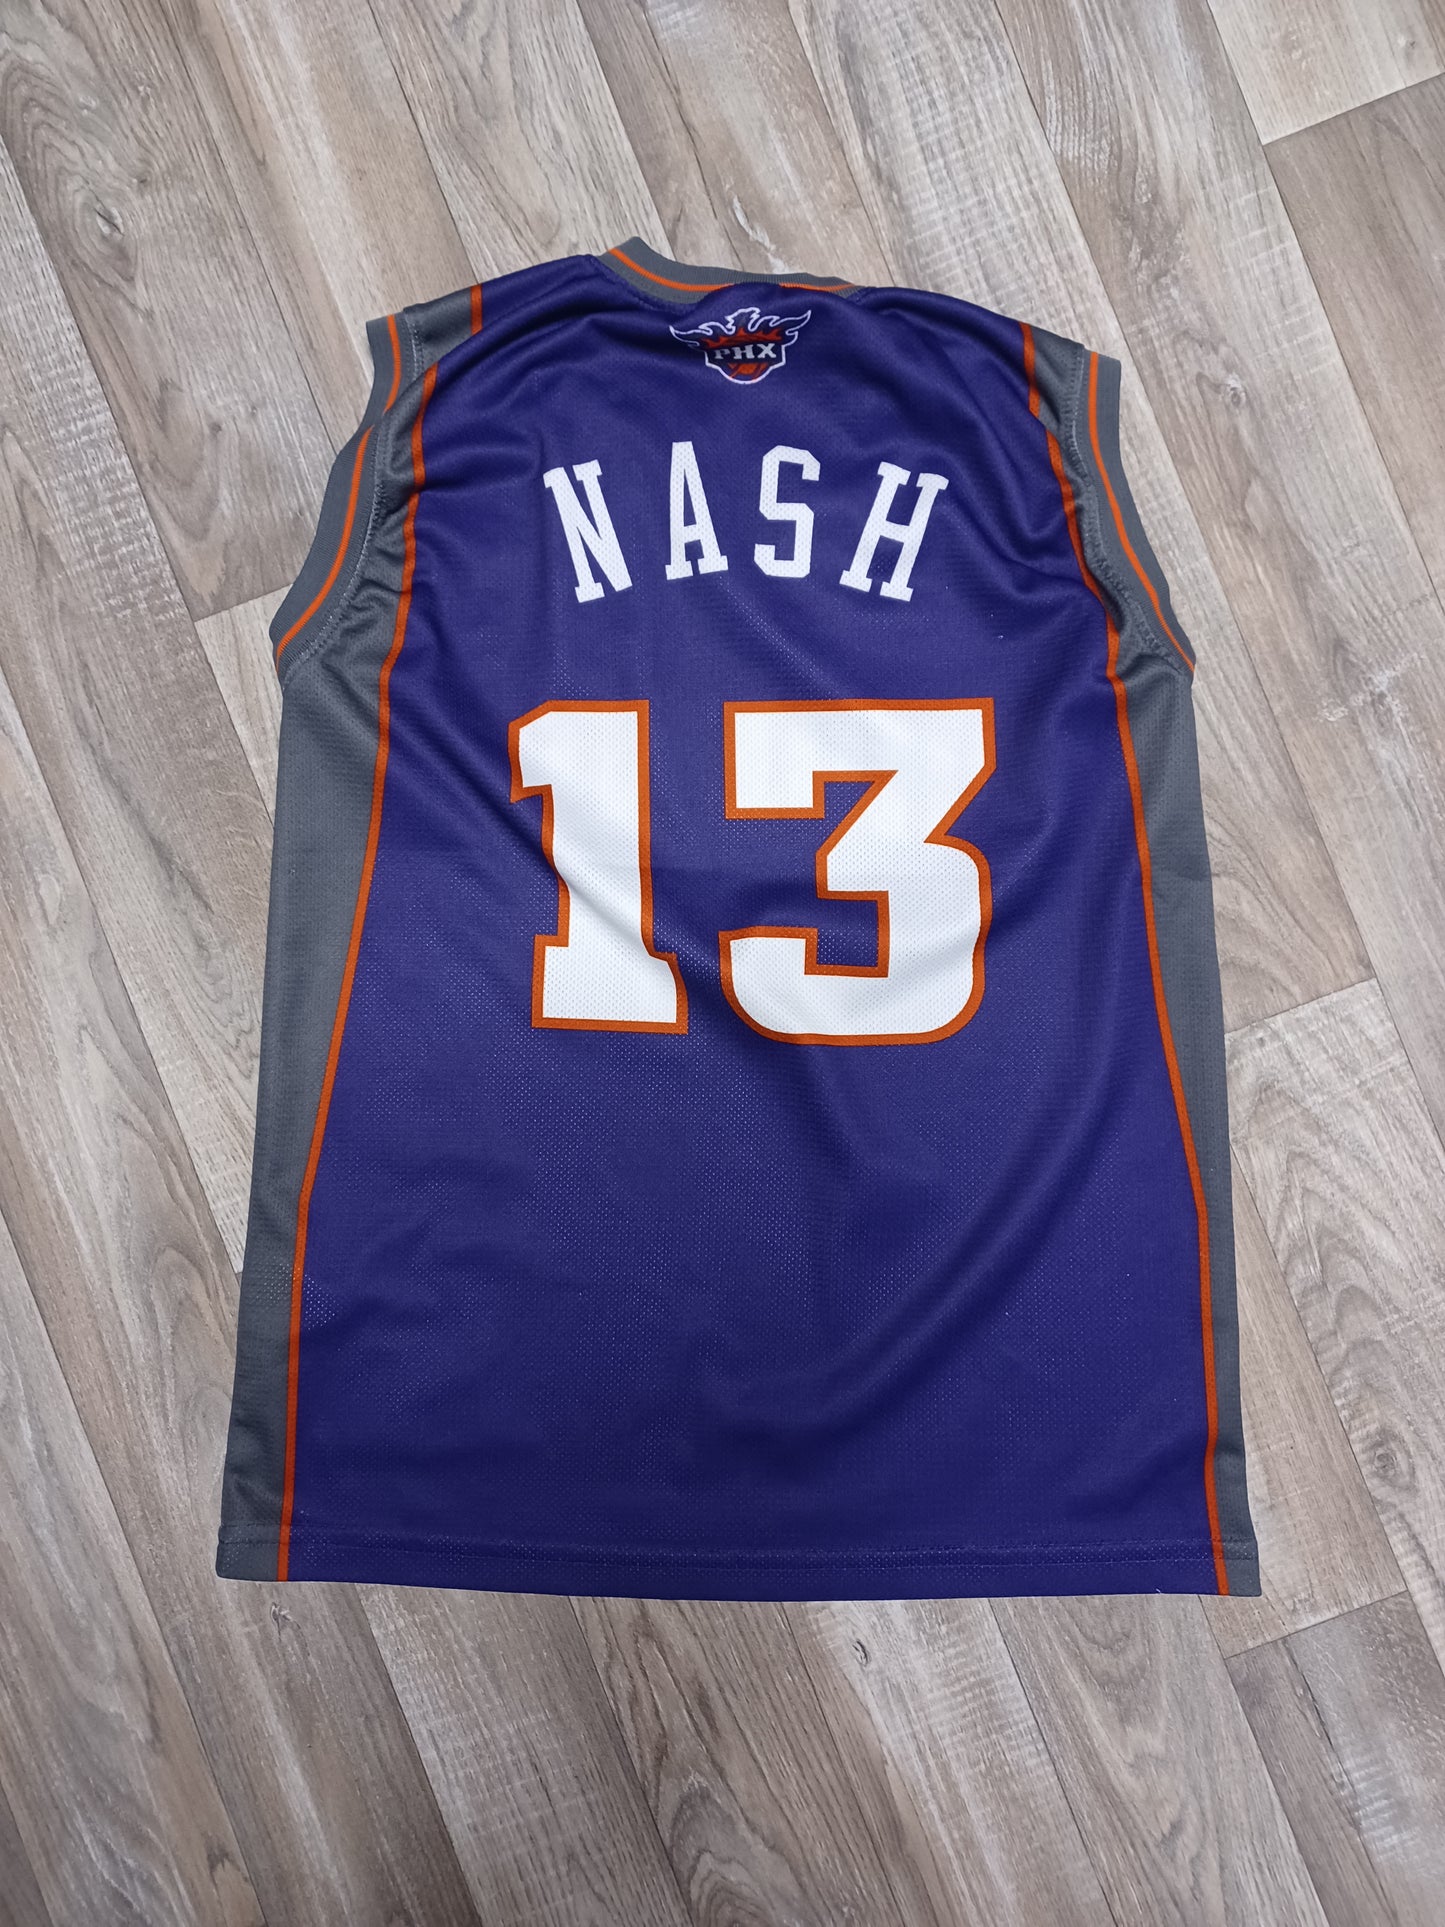 Steve Nash Phoenix Suns Jersey Size Small